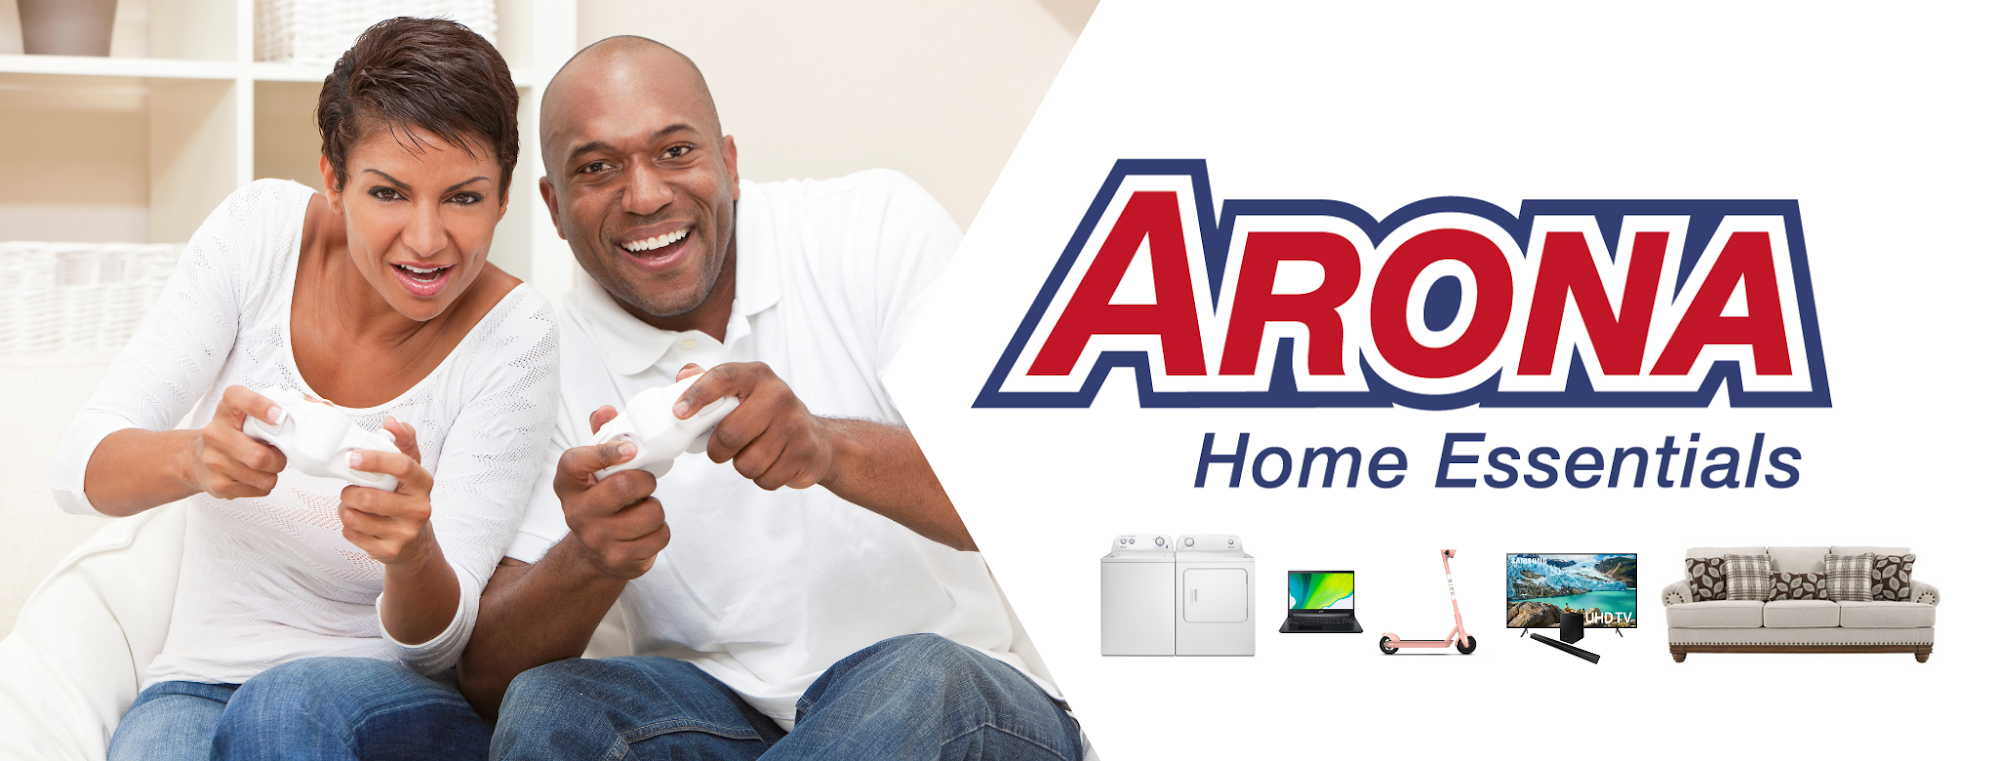 Arona Home Essentials Farmington